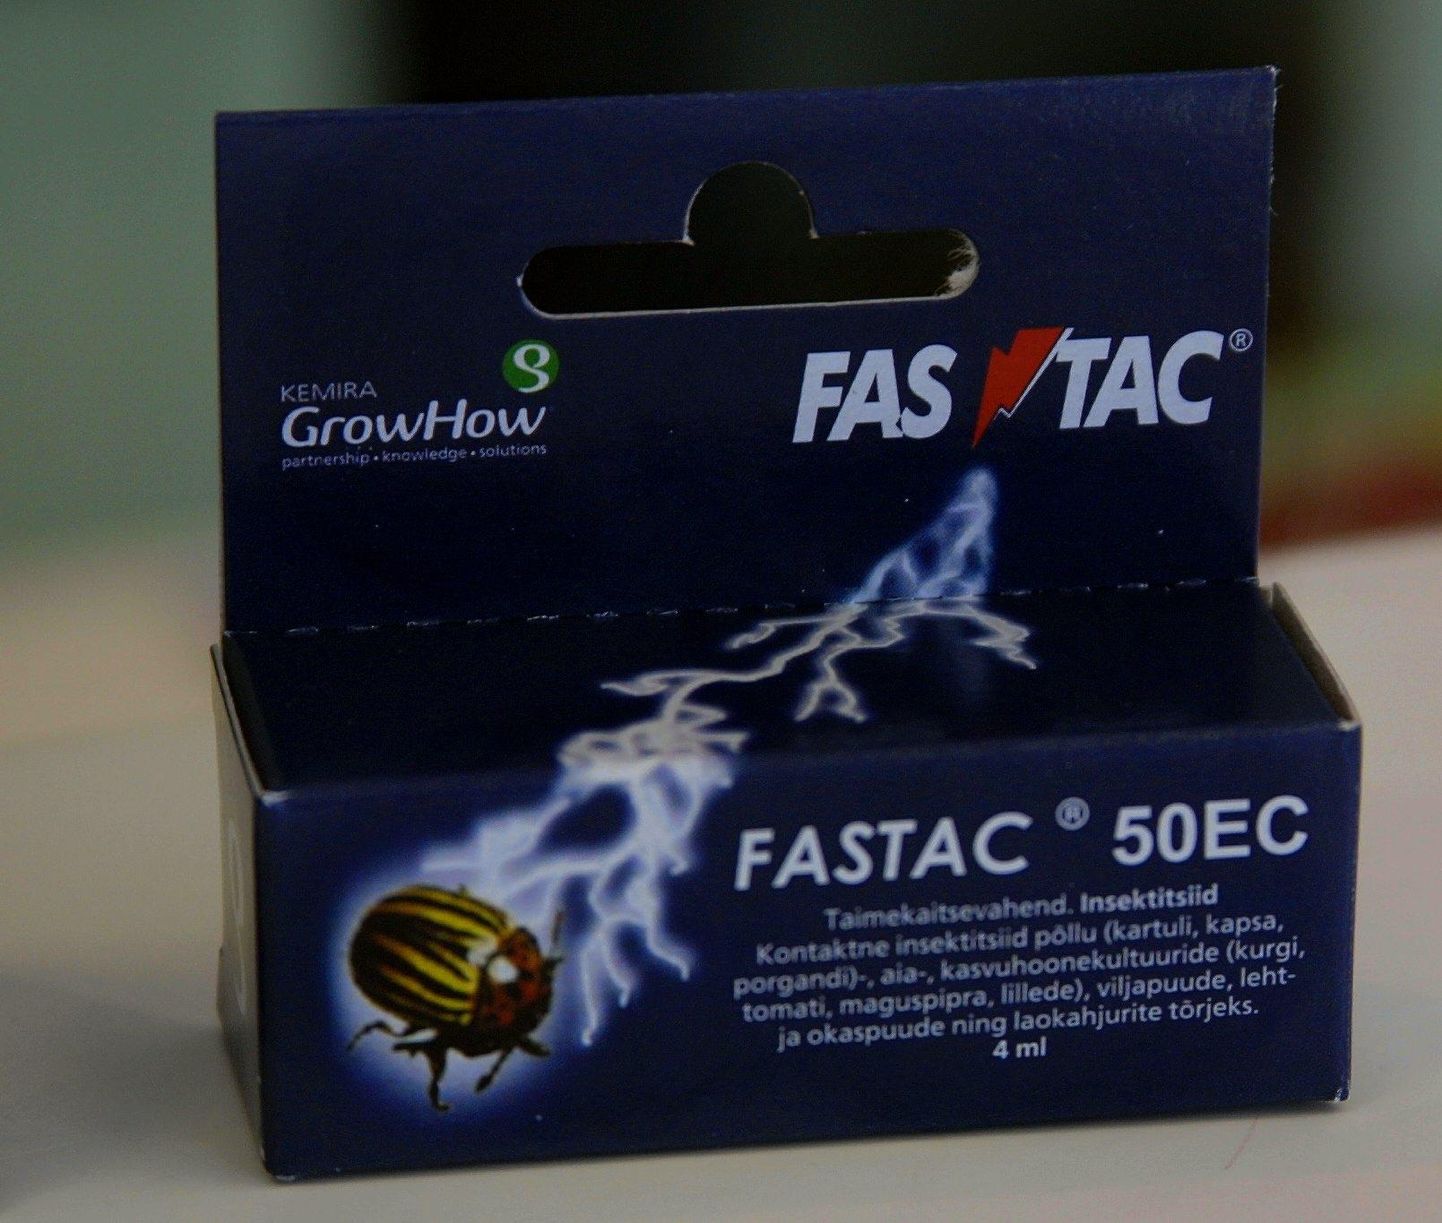 Fastac 50 on laia toimespektriga, pika järelmõjuga kontaktne insektitsiid põllu-, aia-, kasvuhoone- ja laokahjurite tõrjeks. Pärast pritsimist tungib Fastac taimi katvasse vahakihti, toimides sellisel viisil ka söötemürgina.